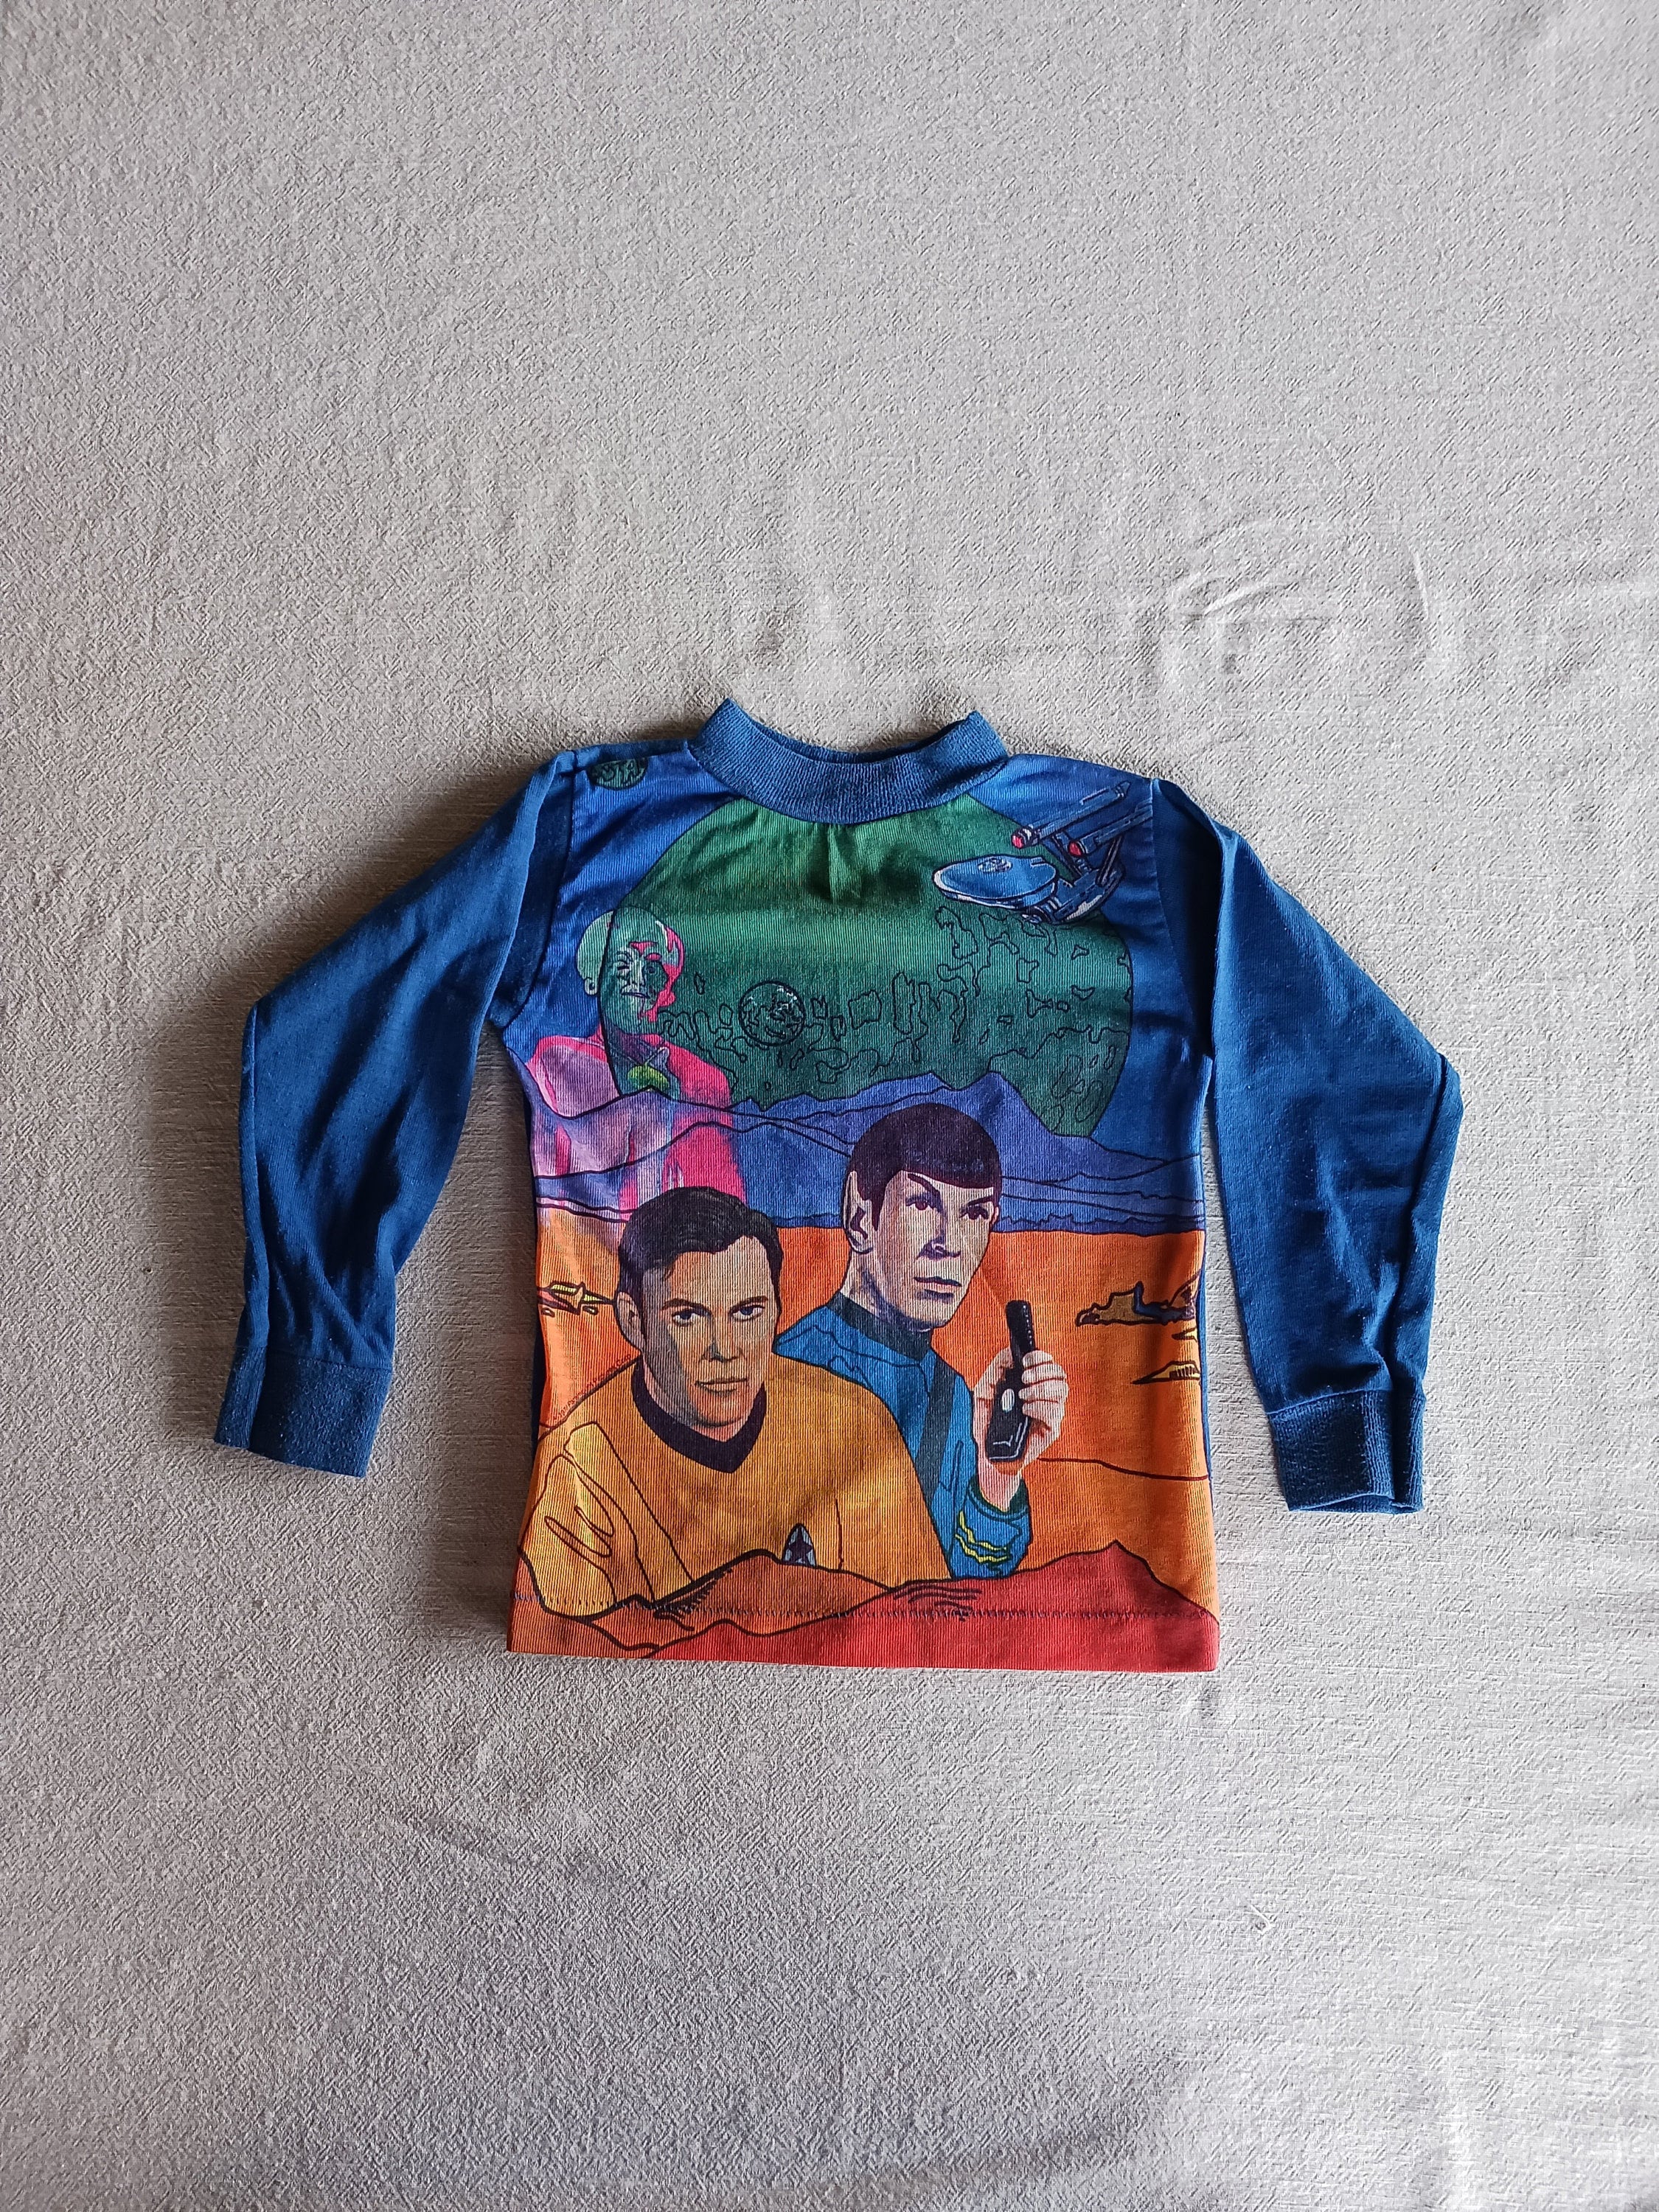 Star Trek Kirk and Spock Toddler T Shirt 2T Vintage Kleding Unisex kinderkleding Tops & T-shirts 70's Fashion 